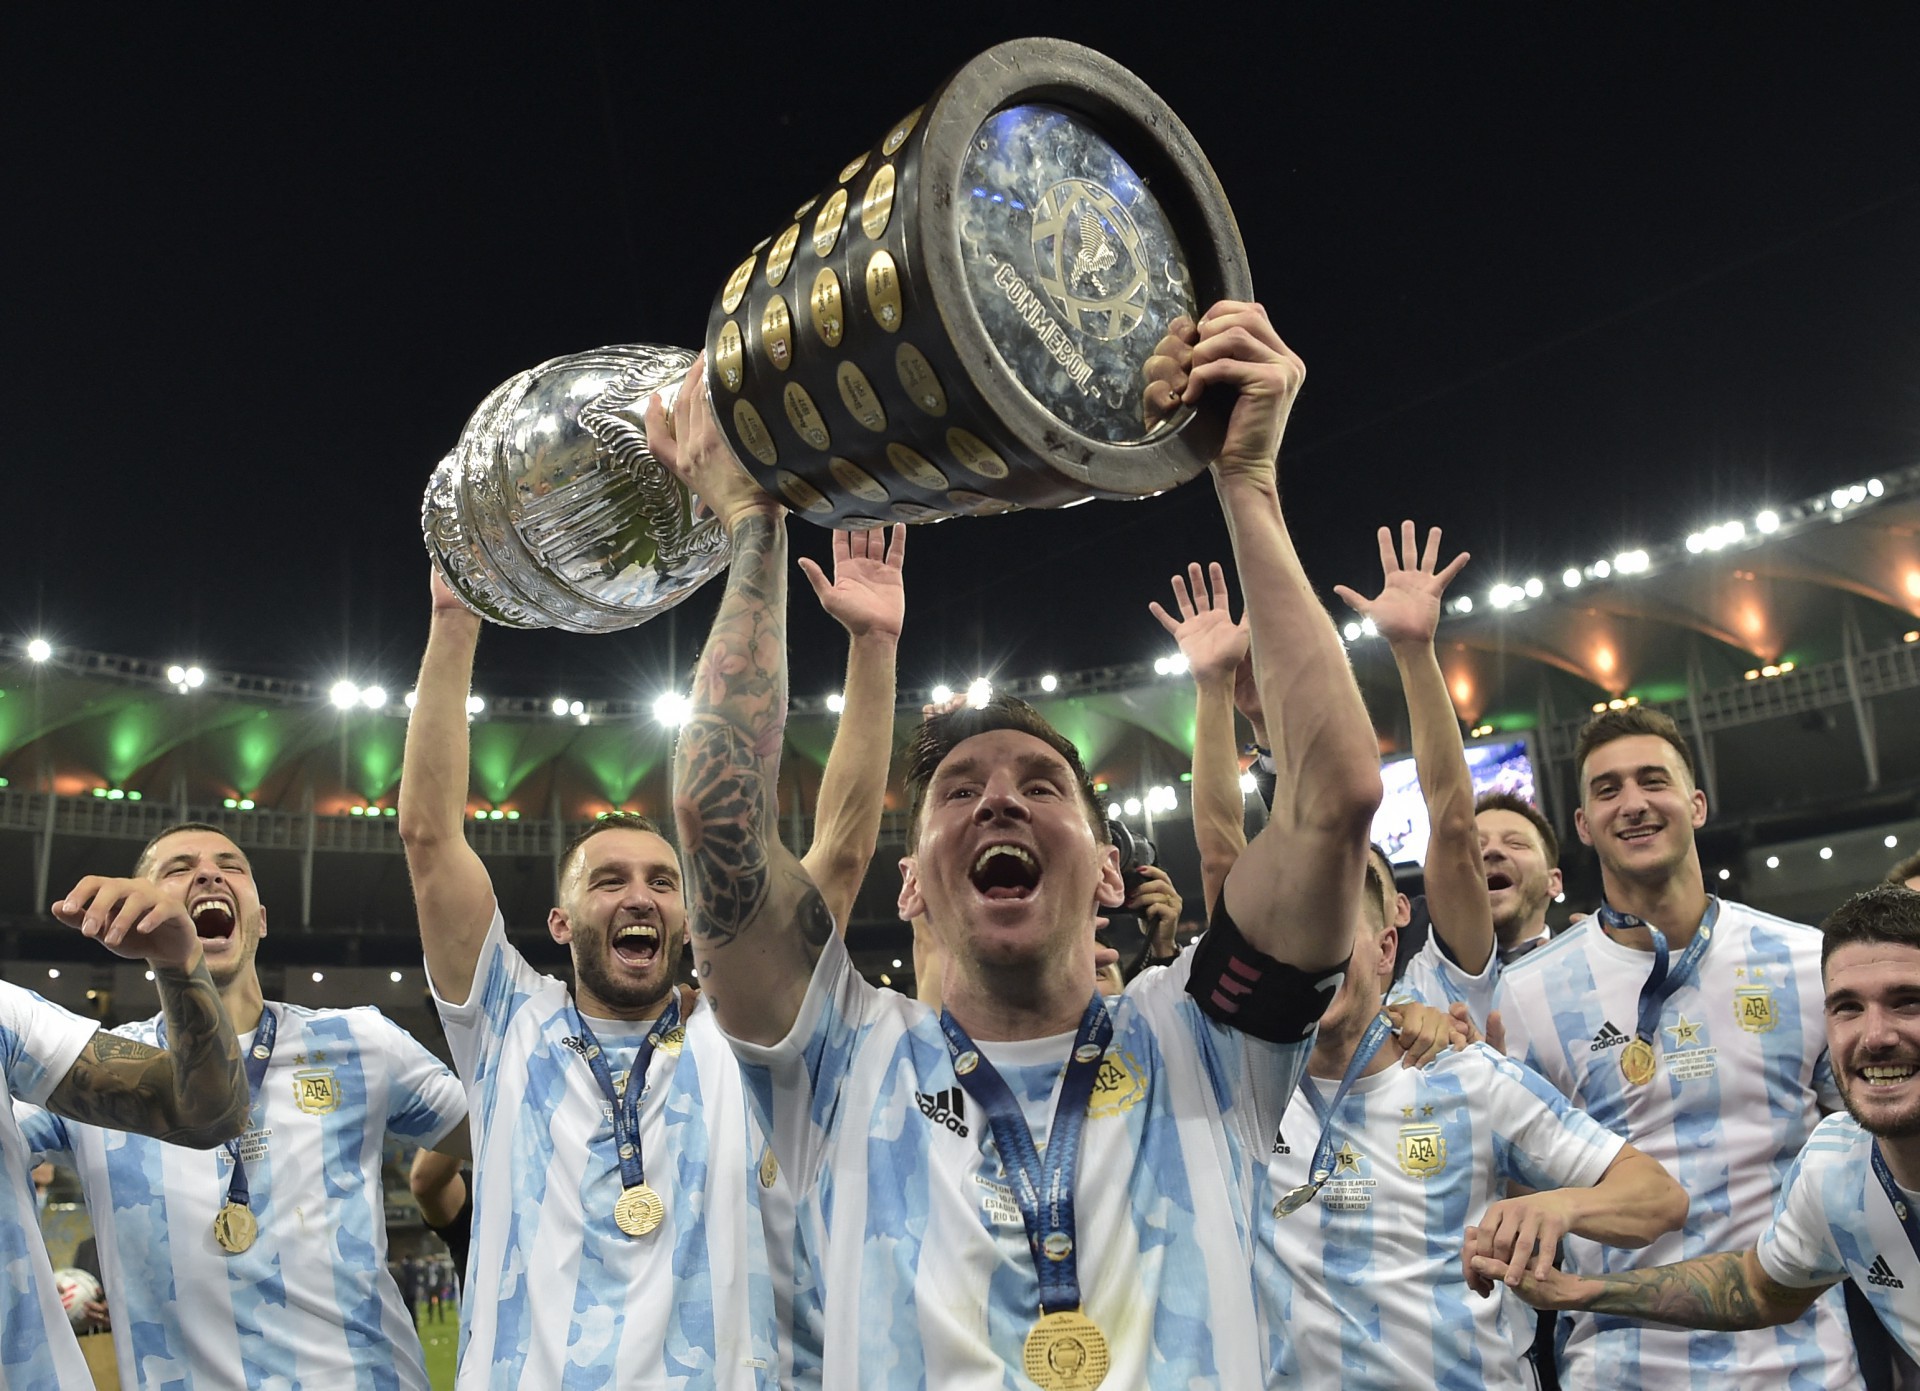 Maior rival do Brasil, Argentina foi campeã da Copa América em cima da seleção brasileira; conheça a equipe do grupo C da Copa do Mundo 2022 (Foto: CARL DE SOUZA / AFP)